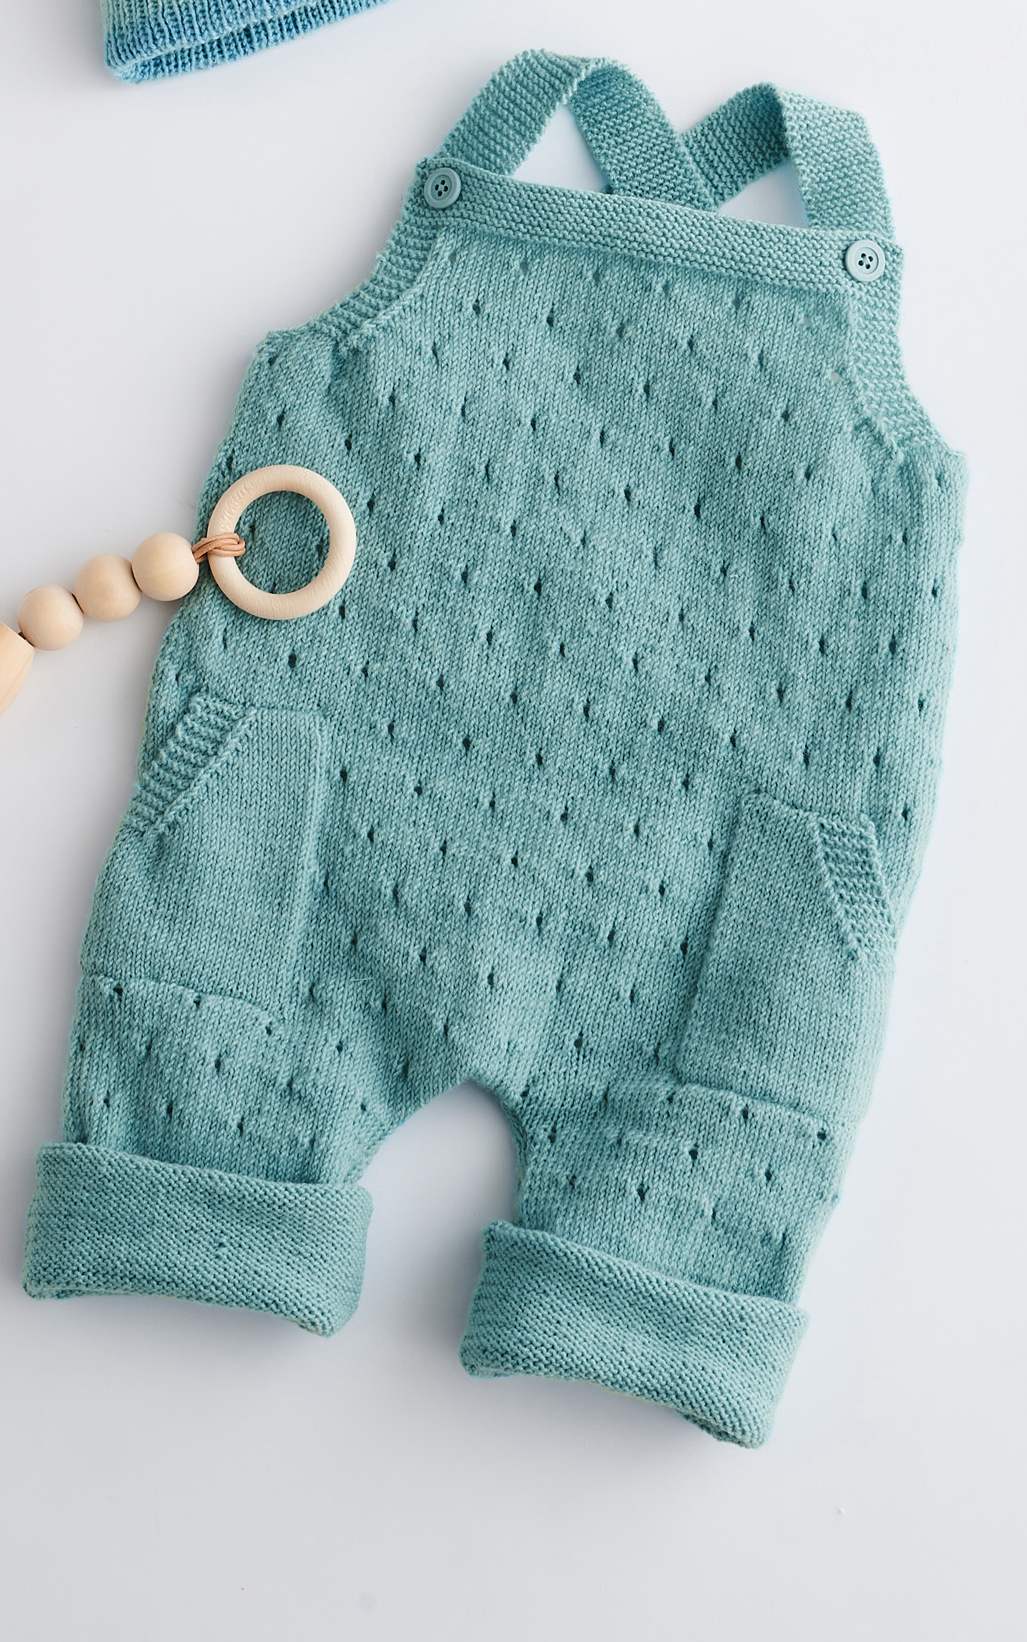 Baby Latzhose mit Taschen - Strickset von LANA GROSSA jetzt online kaufen bei OONIQUE